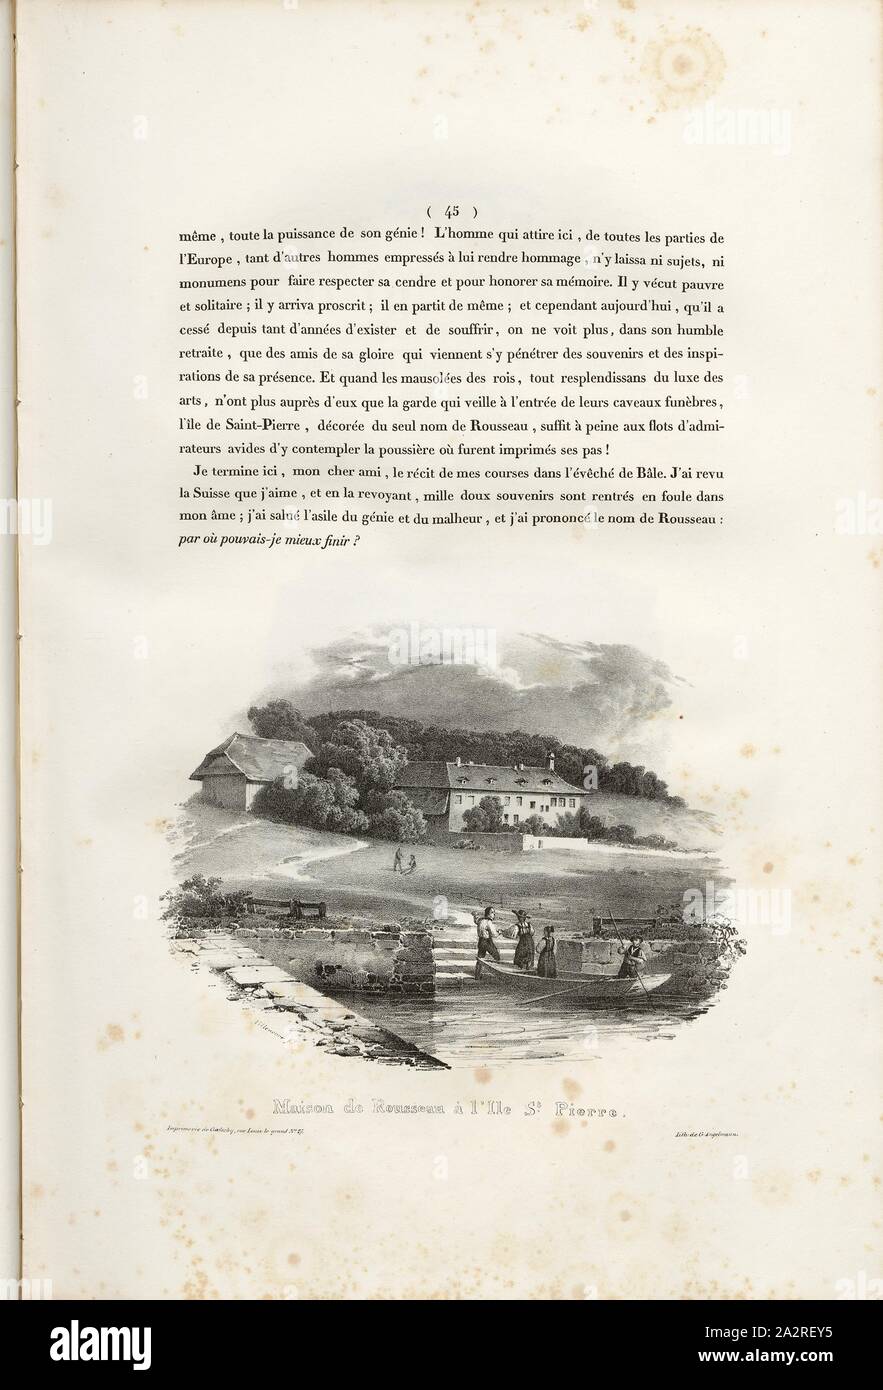 Rousseau's House on St. Peter's Island, Jean-Jacques Rousseau House on St. Peter's Island (Bielersee), Signed: Villeneuve, G. Engelmann, lithograph, plate 4, p. 45 (Vol. 2, Part 2), Villeneuve, M. (ft.); Engelmann, Godefroy (lith.), 1823, Hilaire Léon Sazerac, Godefroy Engelmann: Lettres sur la Suisse (...). Paris: [s.n.], 1823-1832 Stock Photo